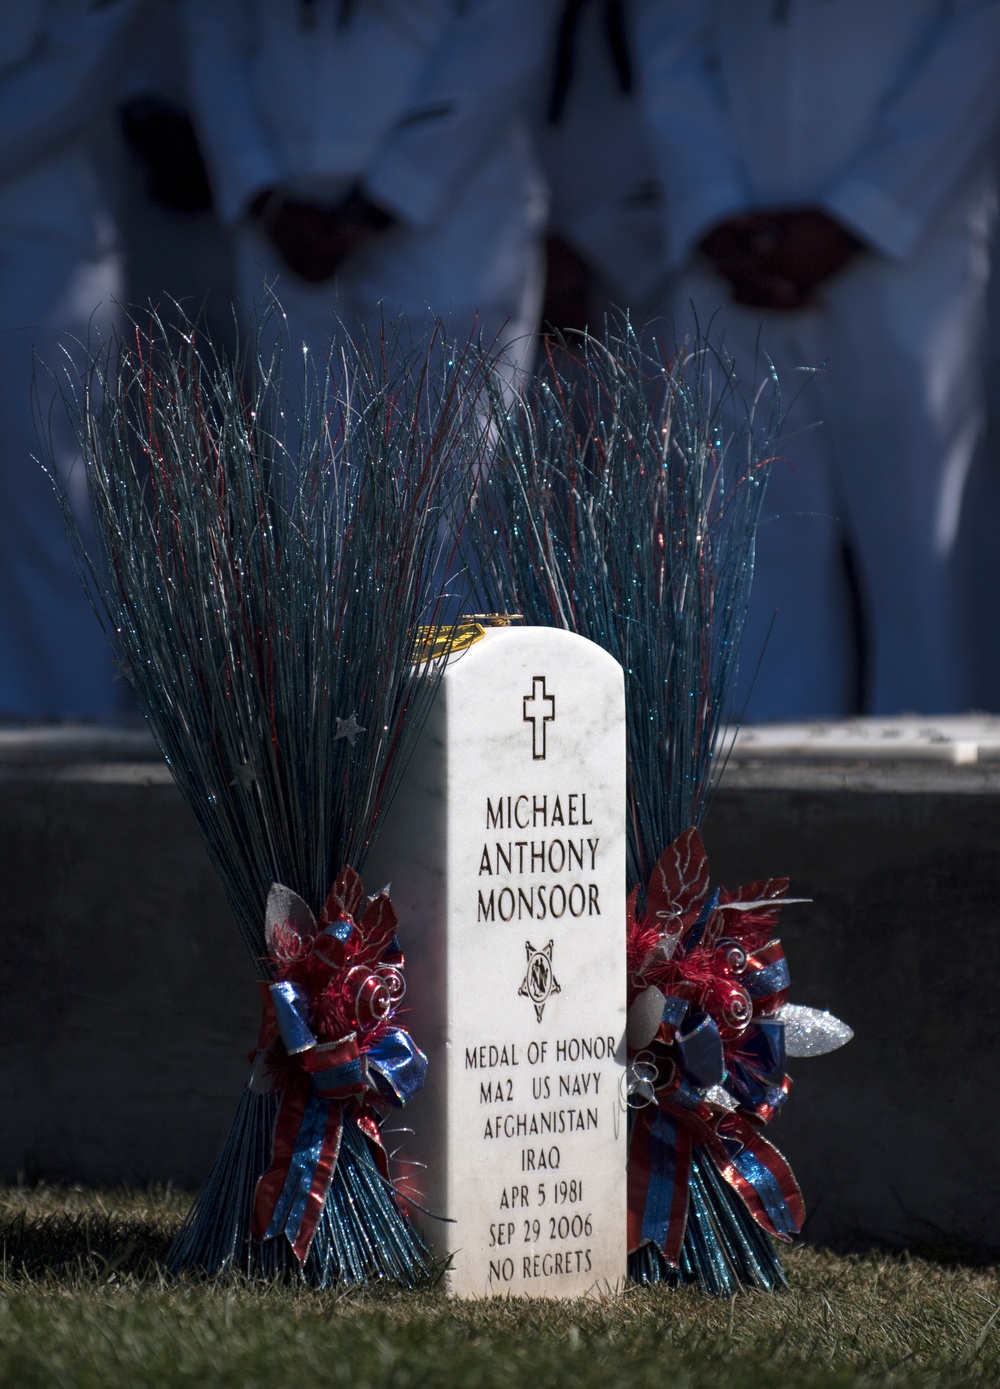 Medal of Honor Michael Monsoor Memorial Service